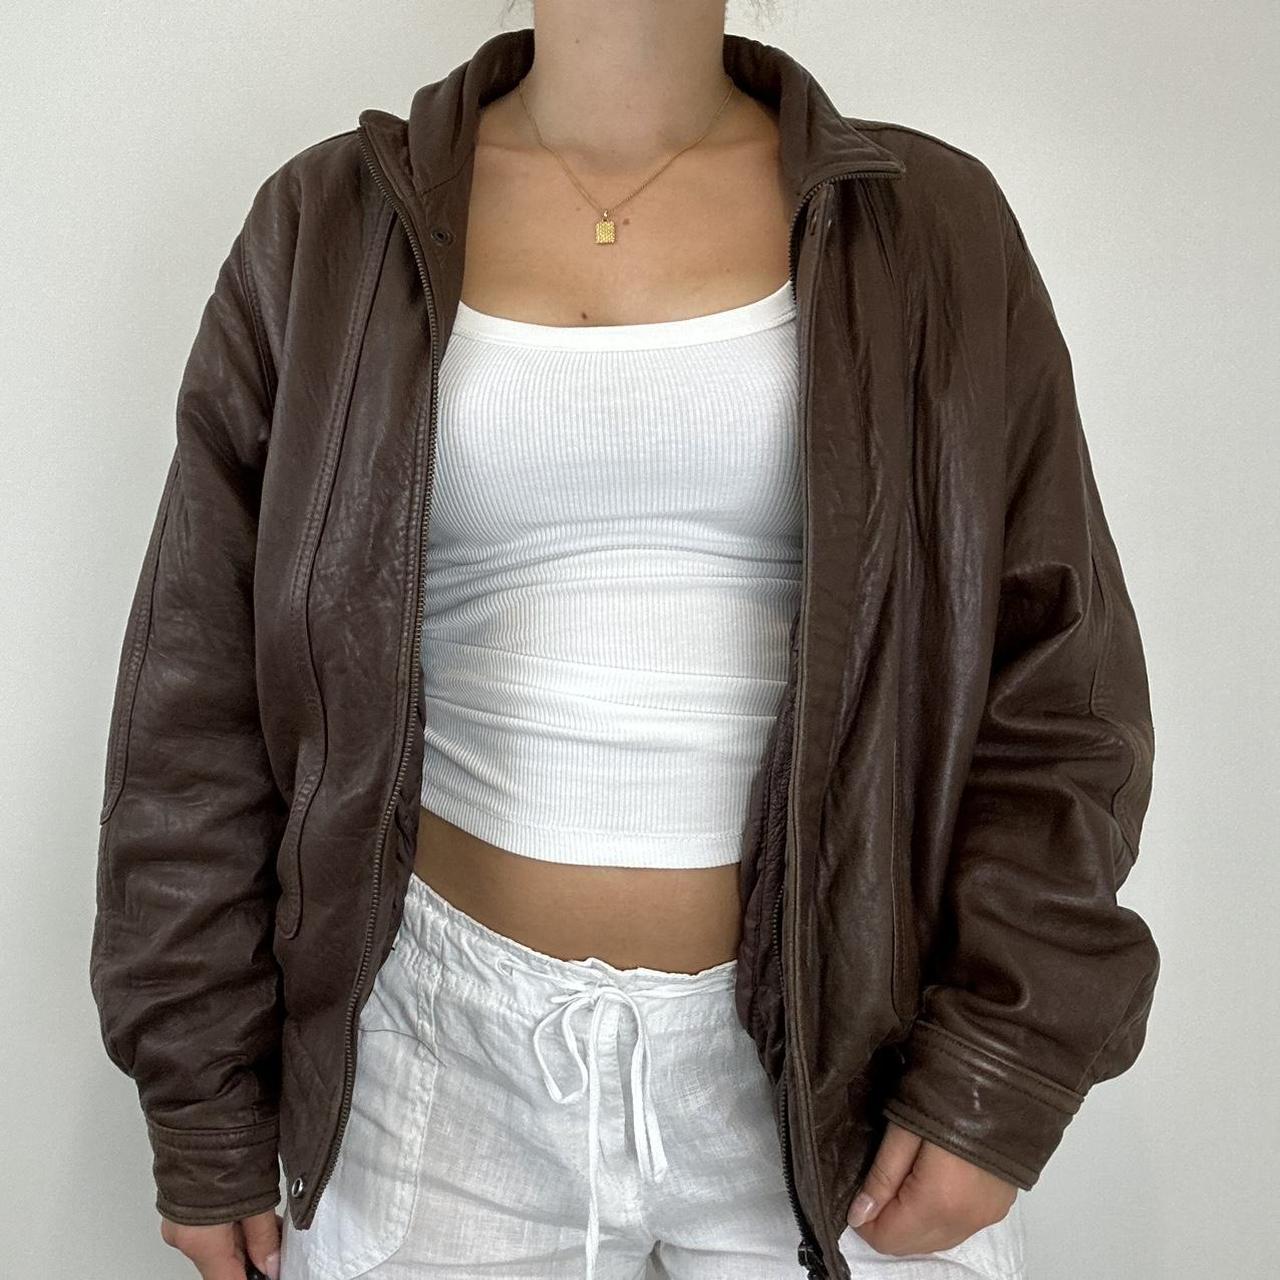 Vintage brown leather bomber jacket Vintage 90s... - Depop